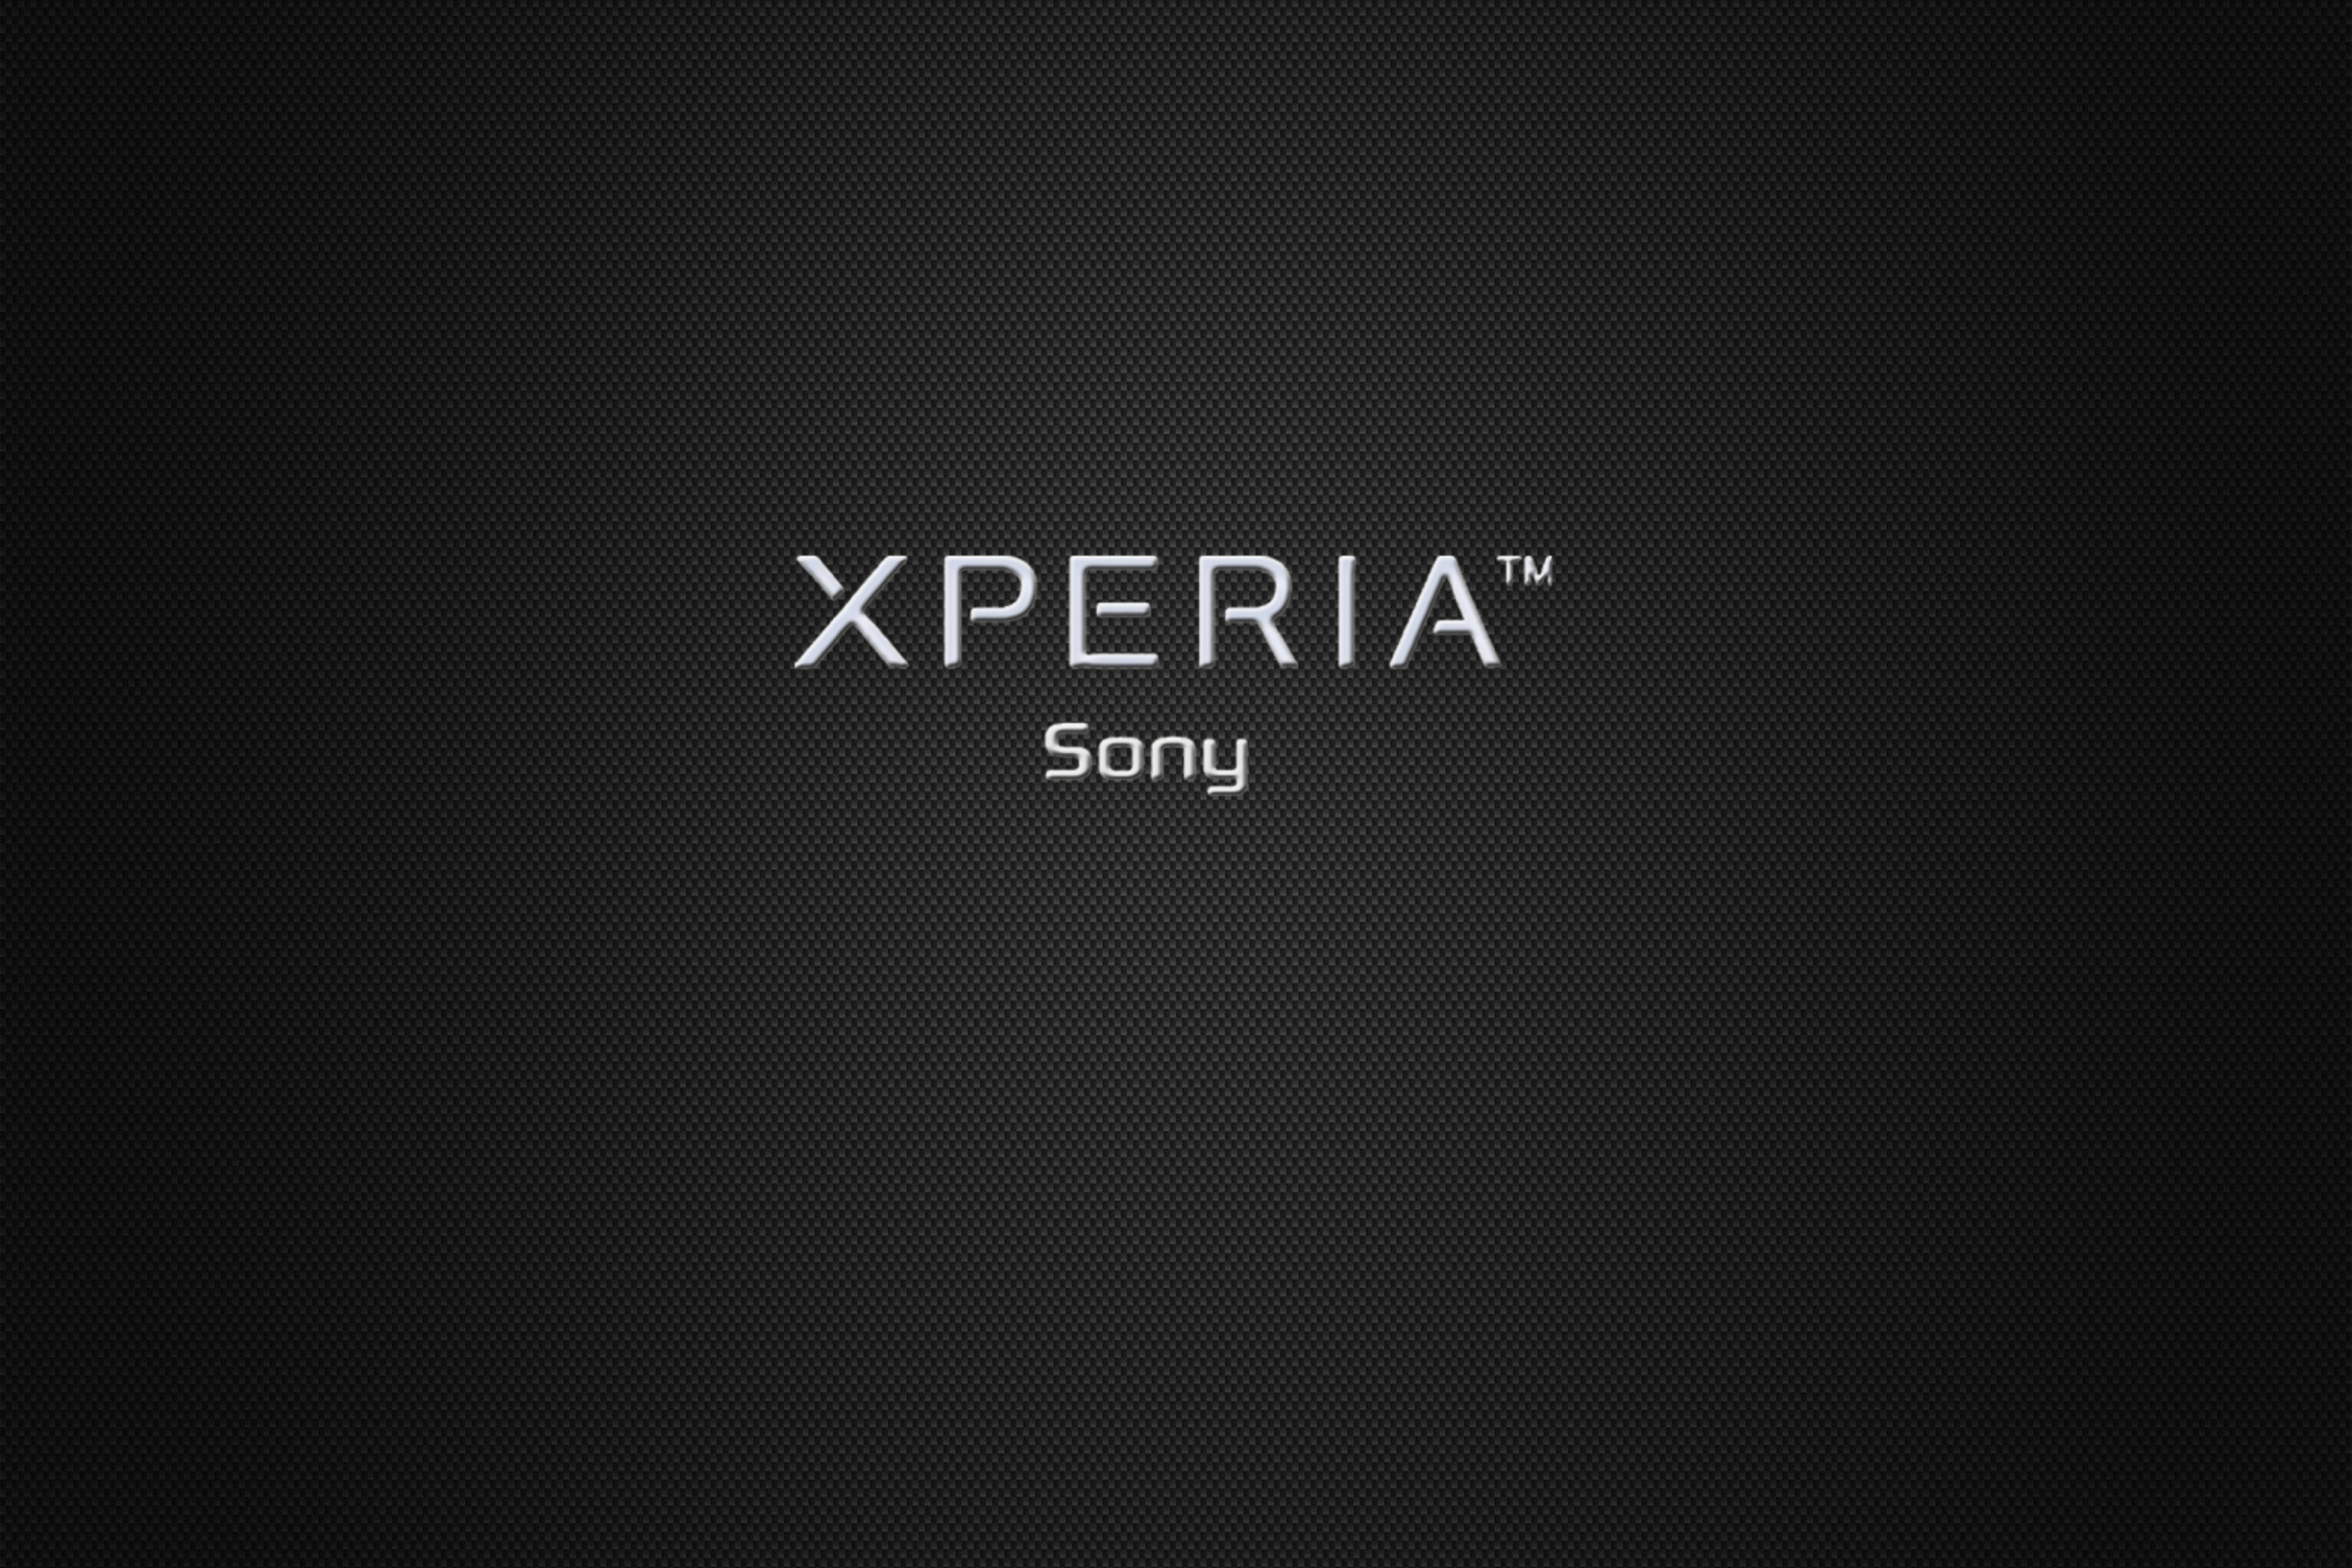 Обои xperia. Обои Sony. Сони иксперия логотип. Фоновые рисунки Sony Xperia.